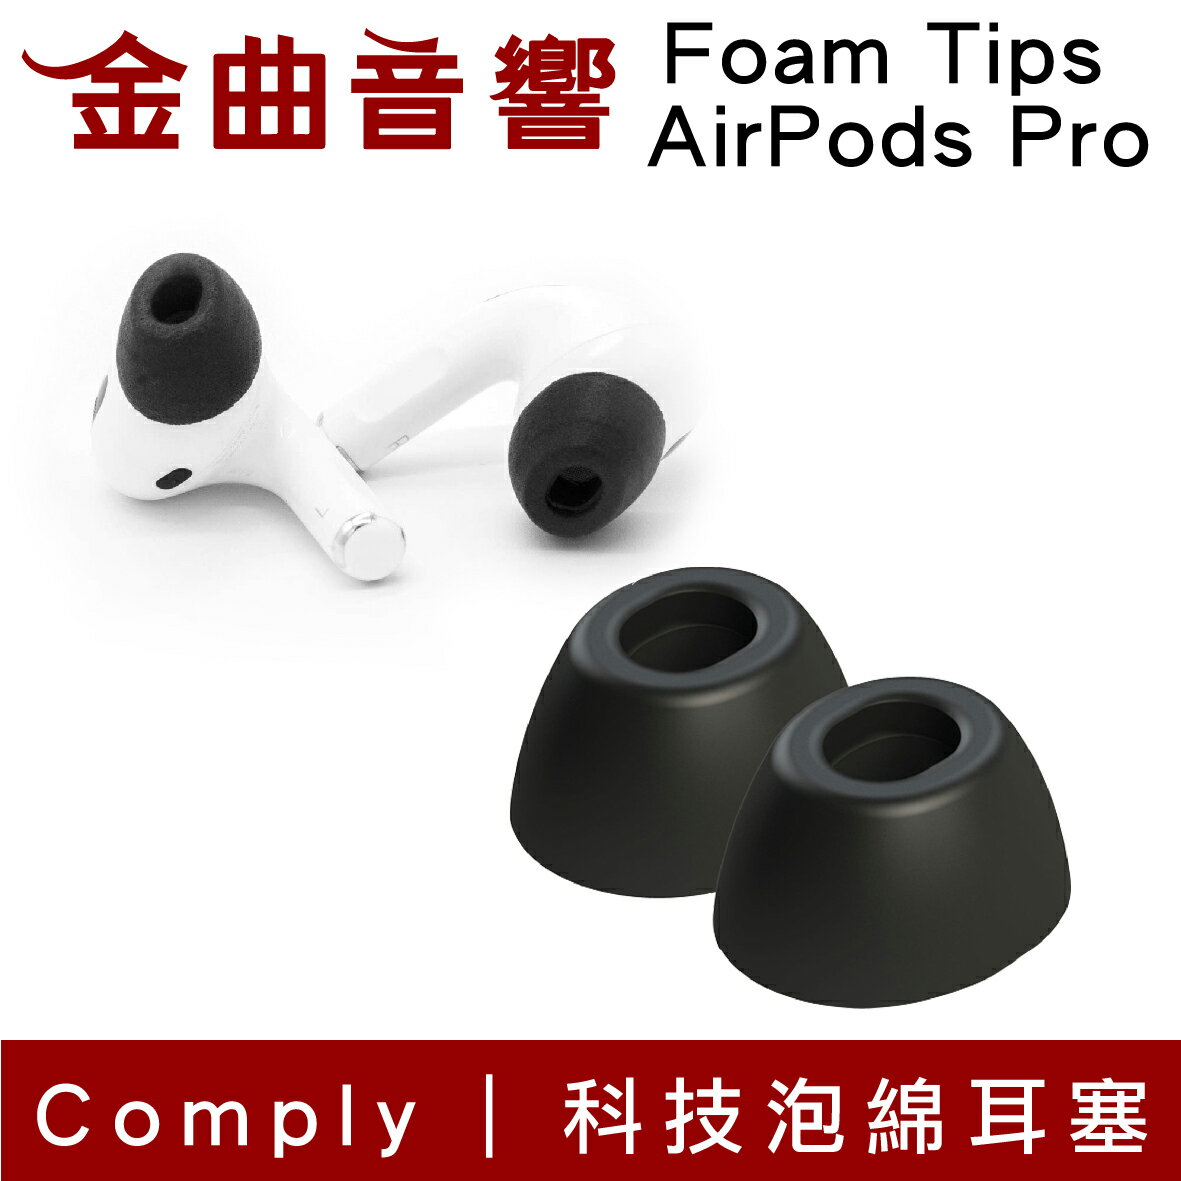 【點數 9%】 Comply Foam Tips AirPods Pro 專用 科技泡綿 耳塞 | 金曲音響